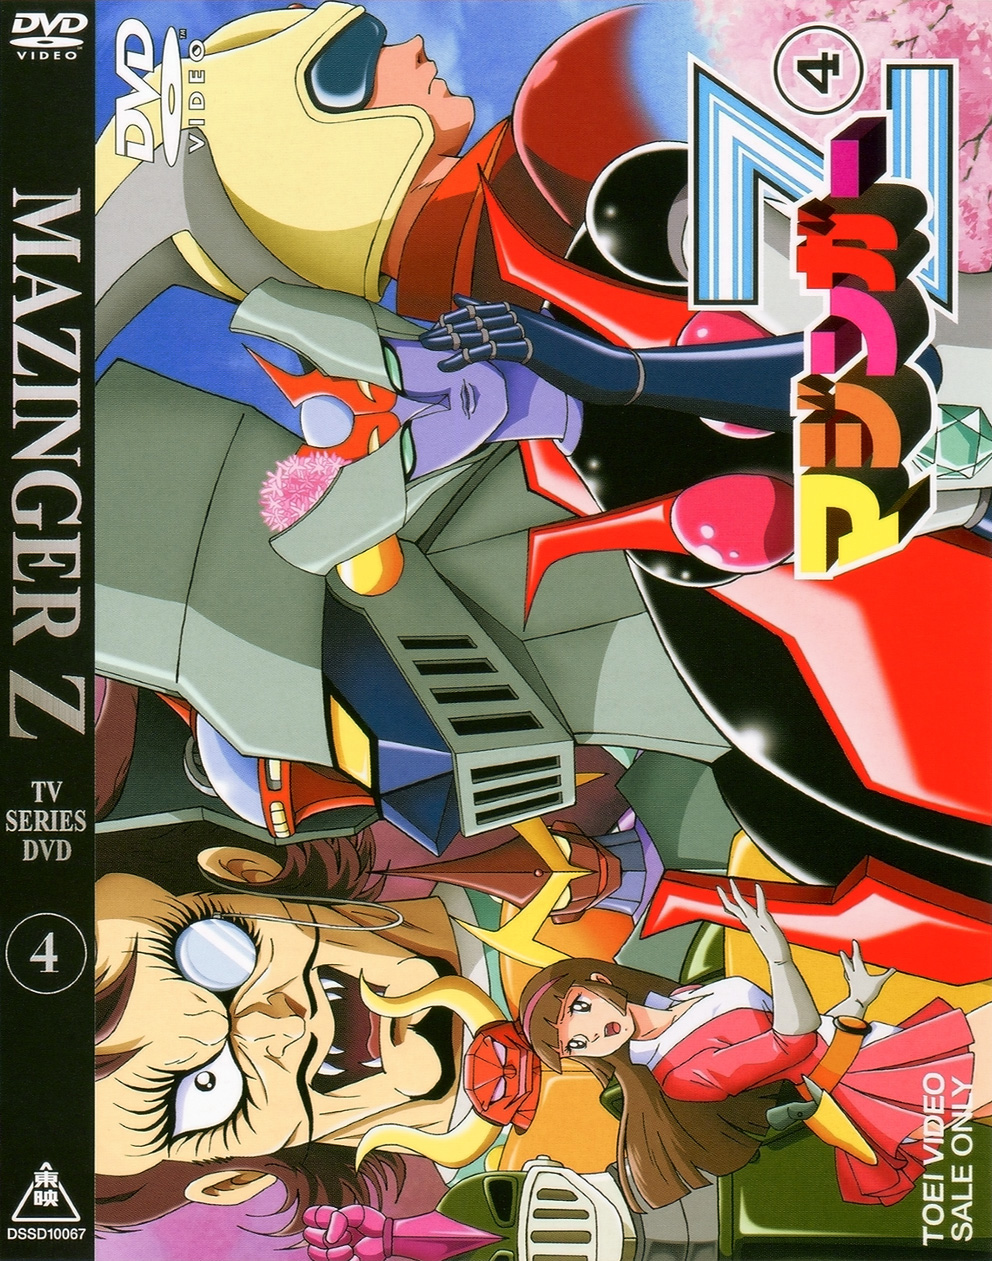 マジンガーZ Vol.4 [DVD]